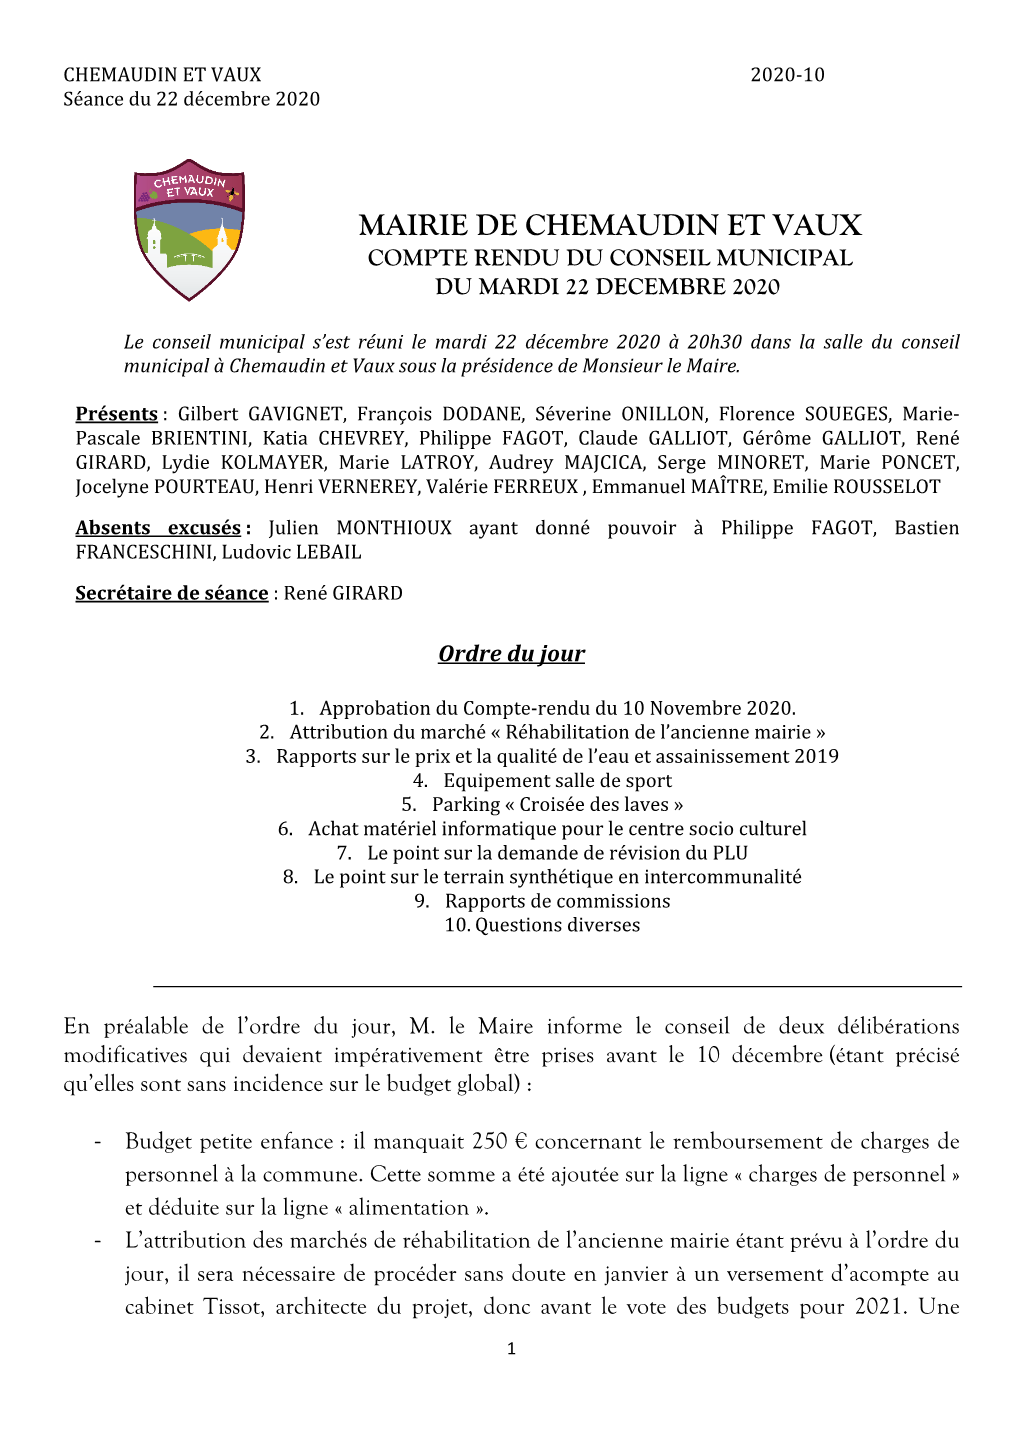 Mairie De Chemaudin Et Vaux Compte Rendu Du Conseil Municipal Du Mardi 22 Decembre 2020